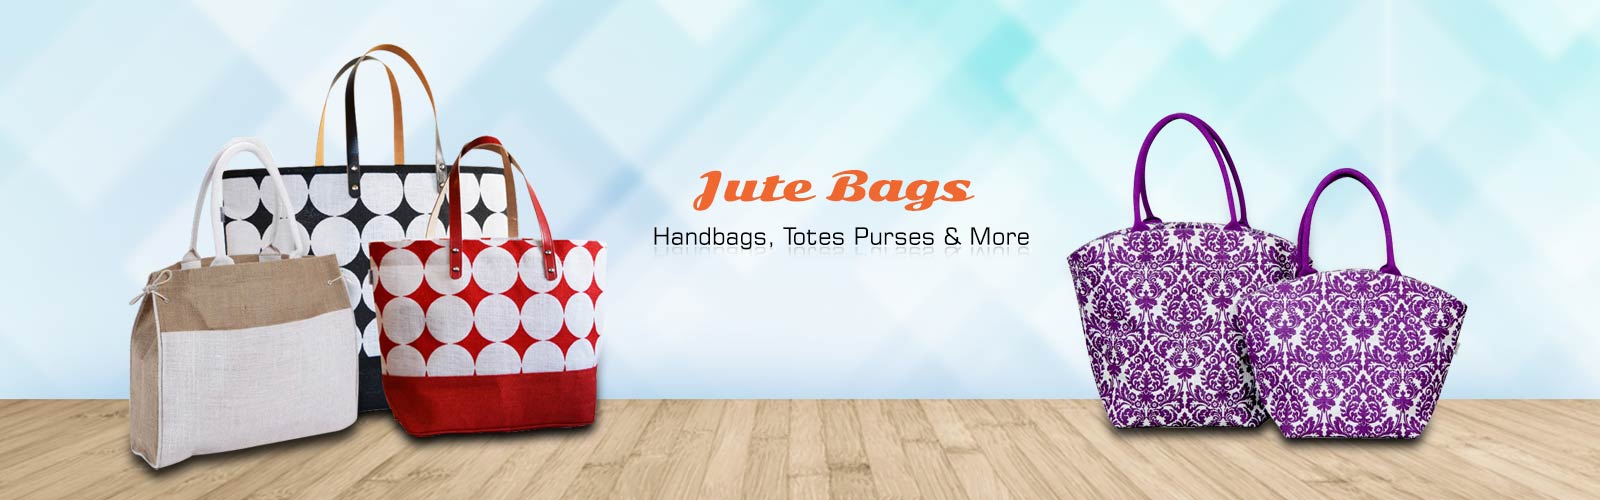 Wholesale Jute Bag Supplier in Hawaii